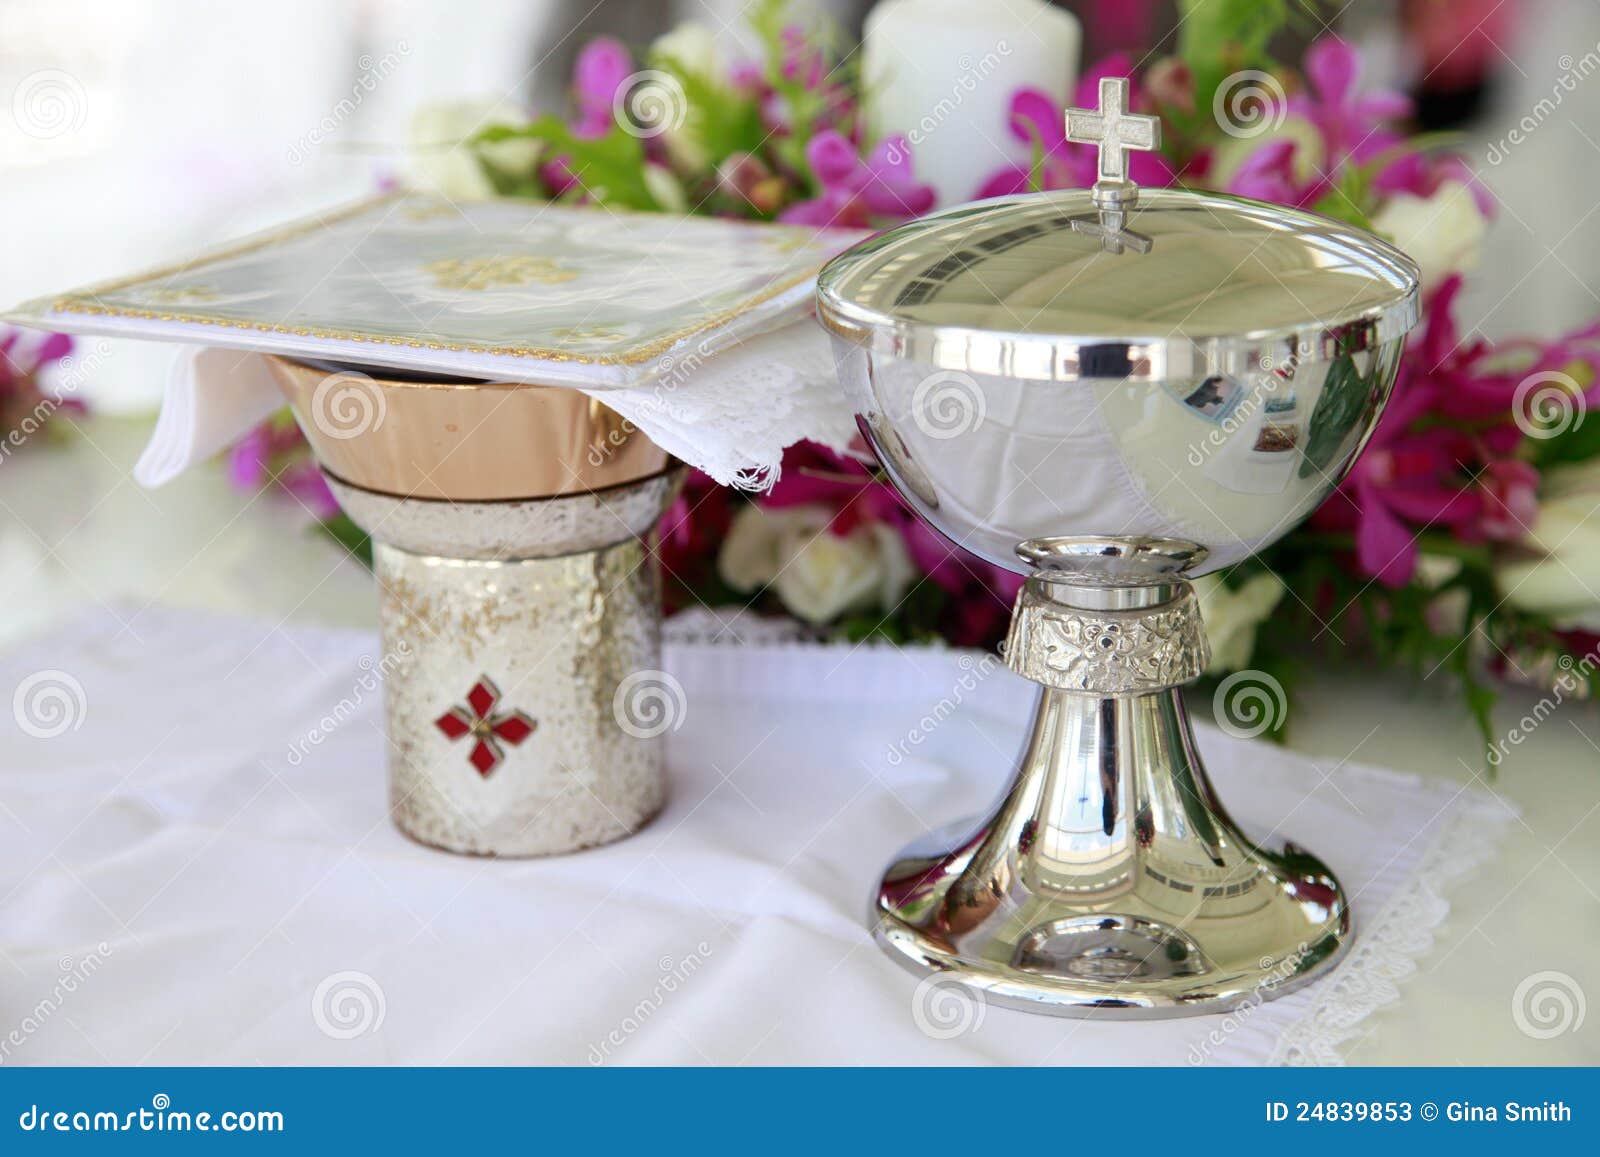 Catholic wedding. stock image. Image of candle, chapel - 24839853